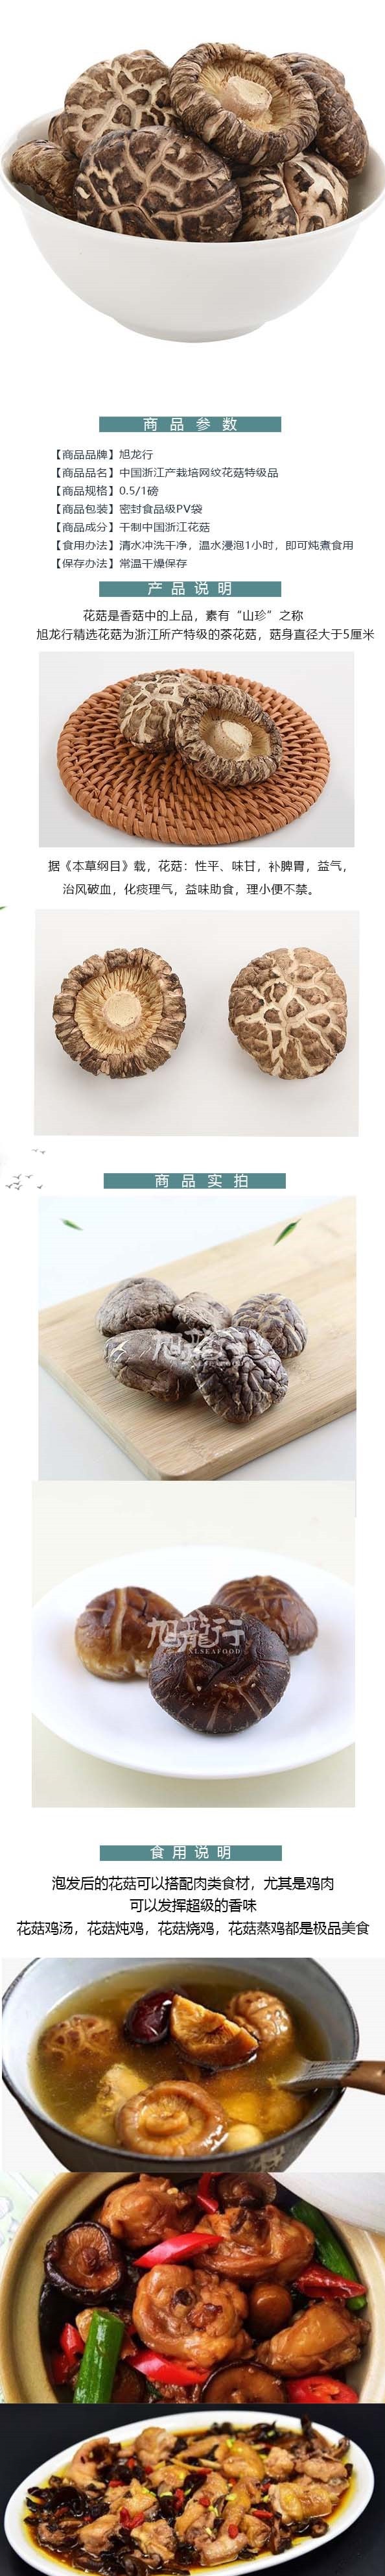 美国旭龙行特级韩式白花菇 中国产足干网纹花菇 227克 8oz